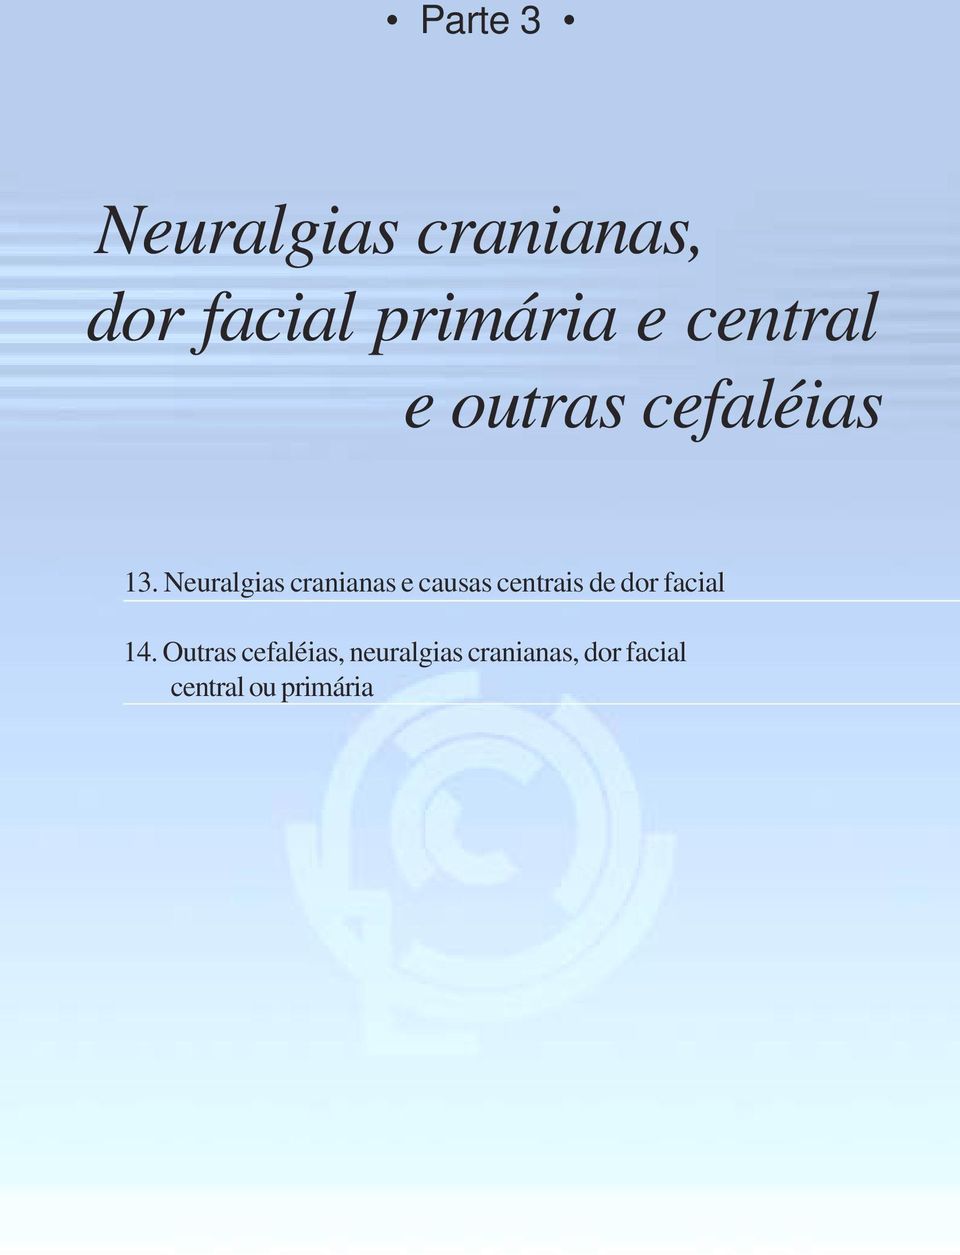 Neuralgias cranianas e causas centrais de dor facial